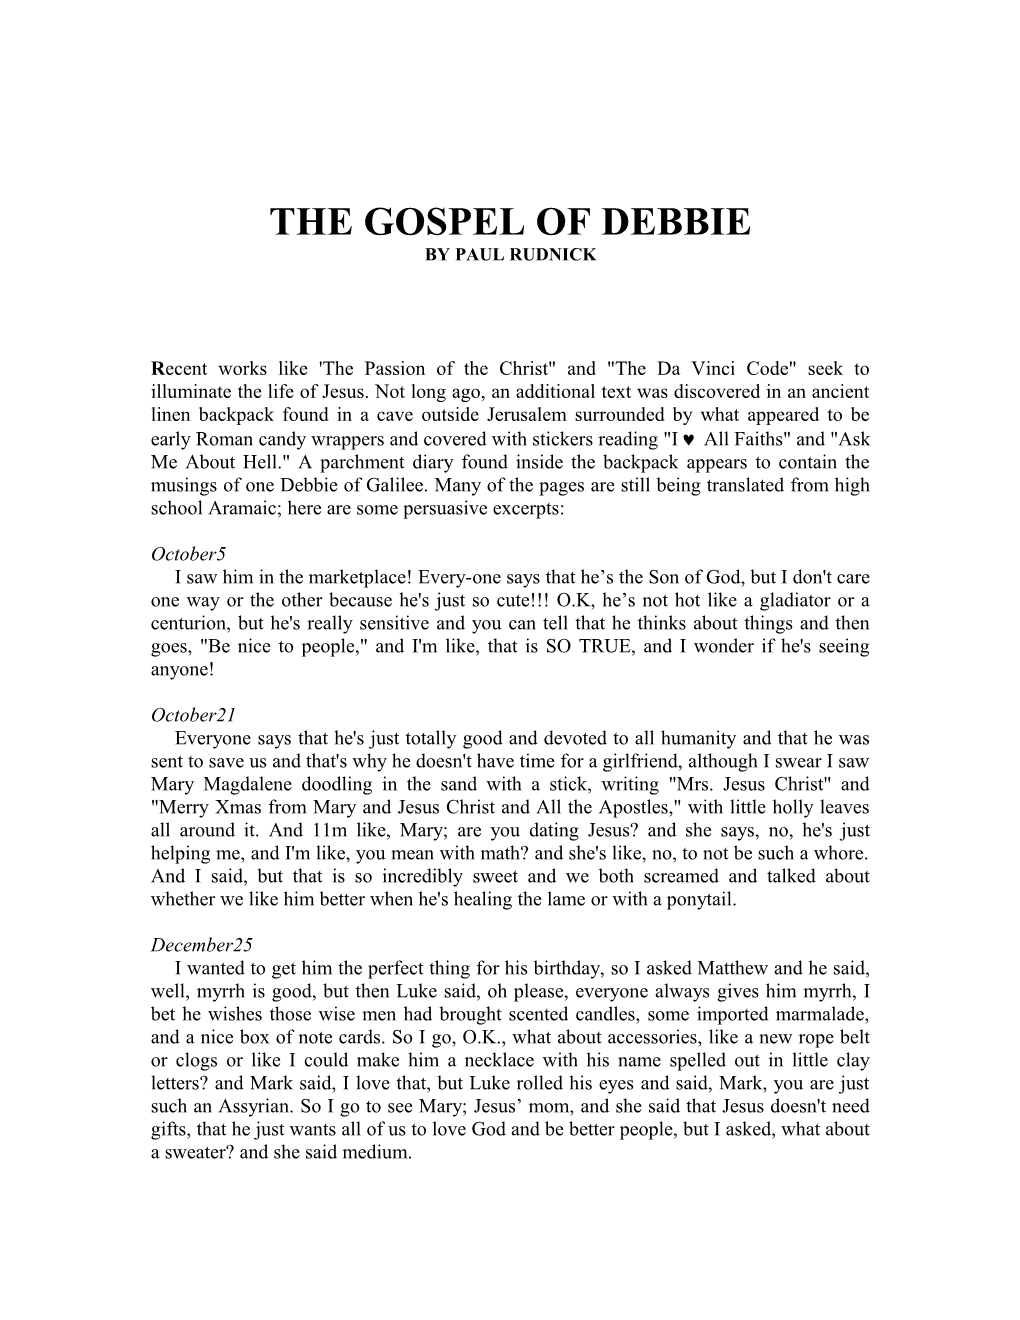 The Gospel of Debbie